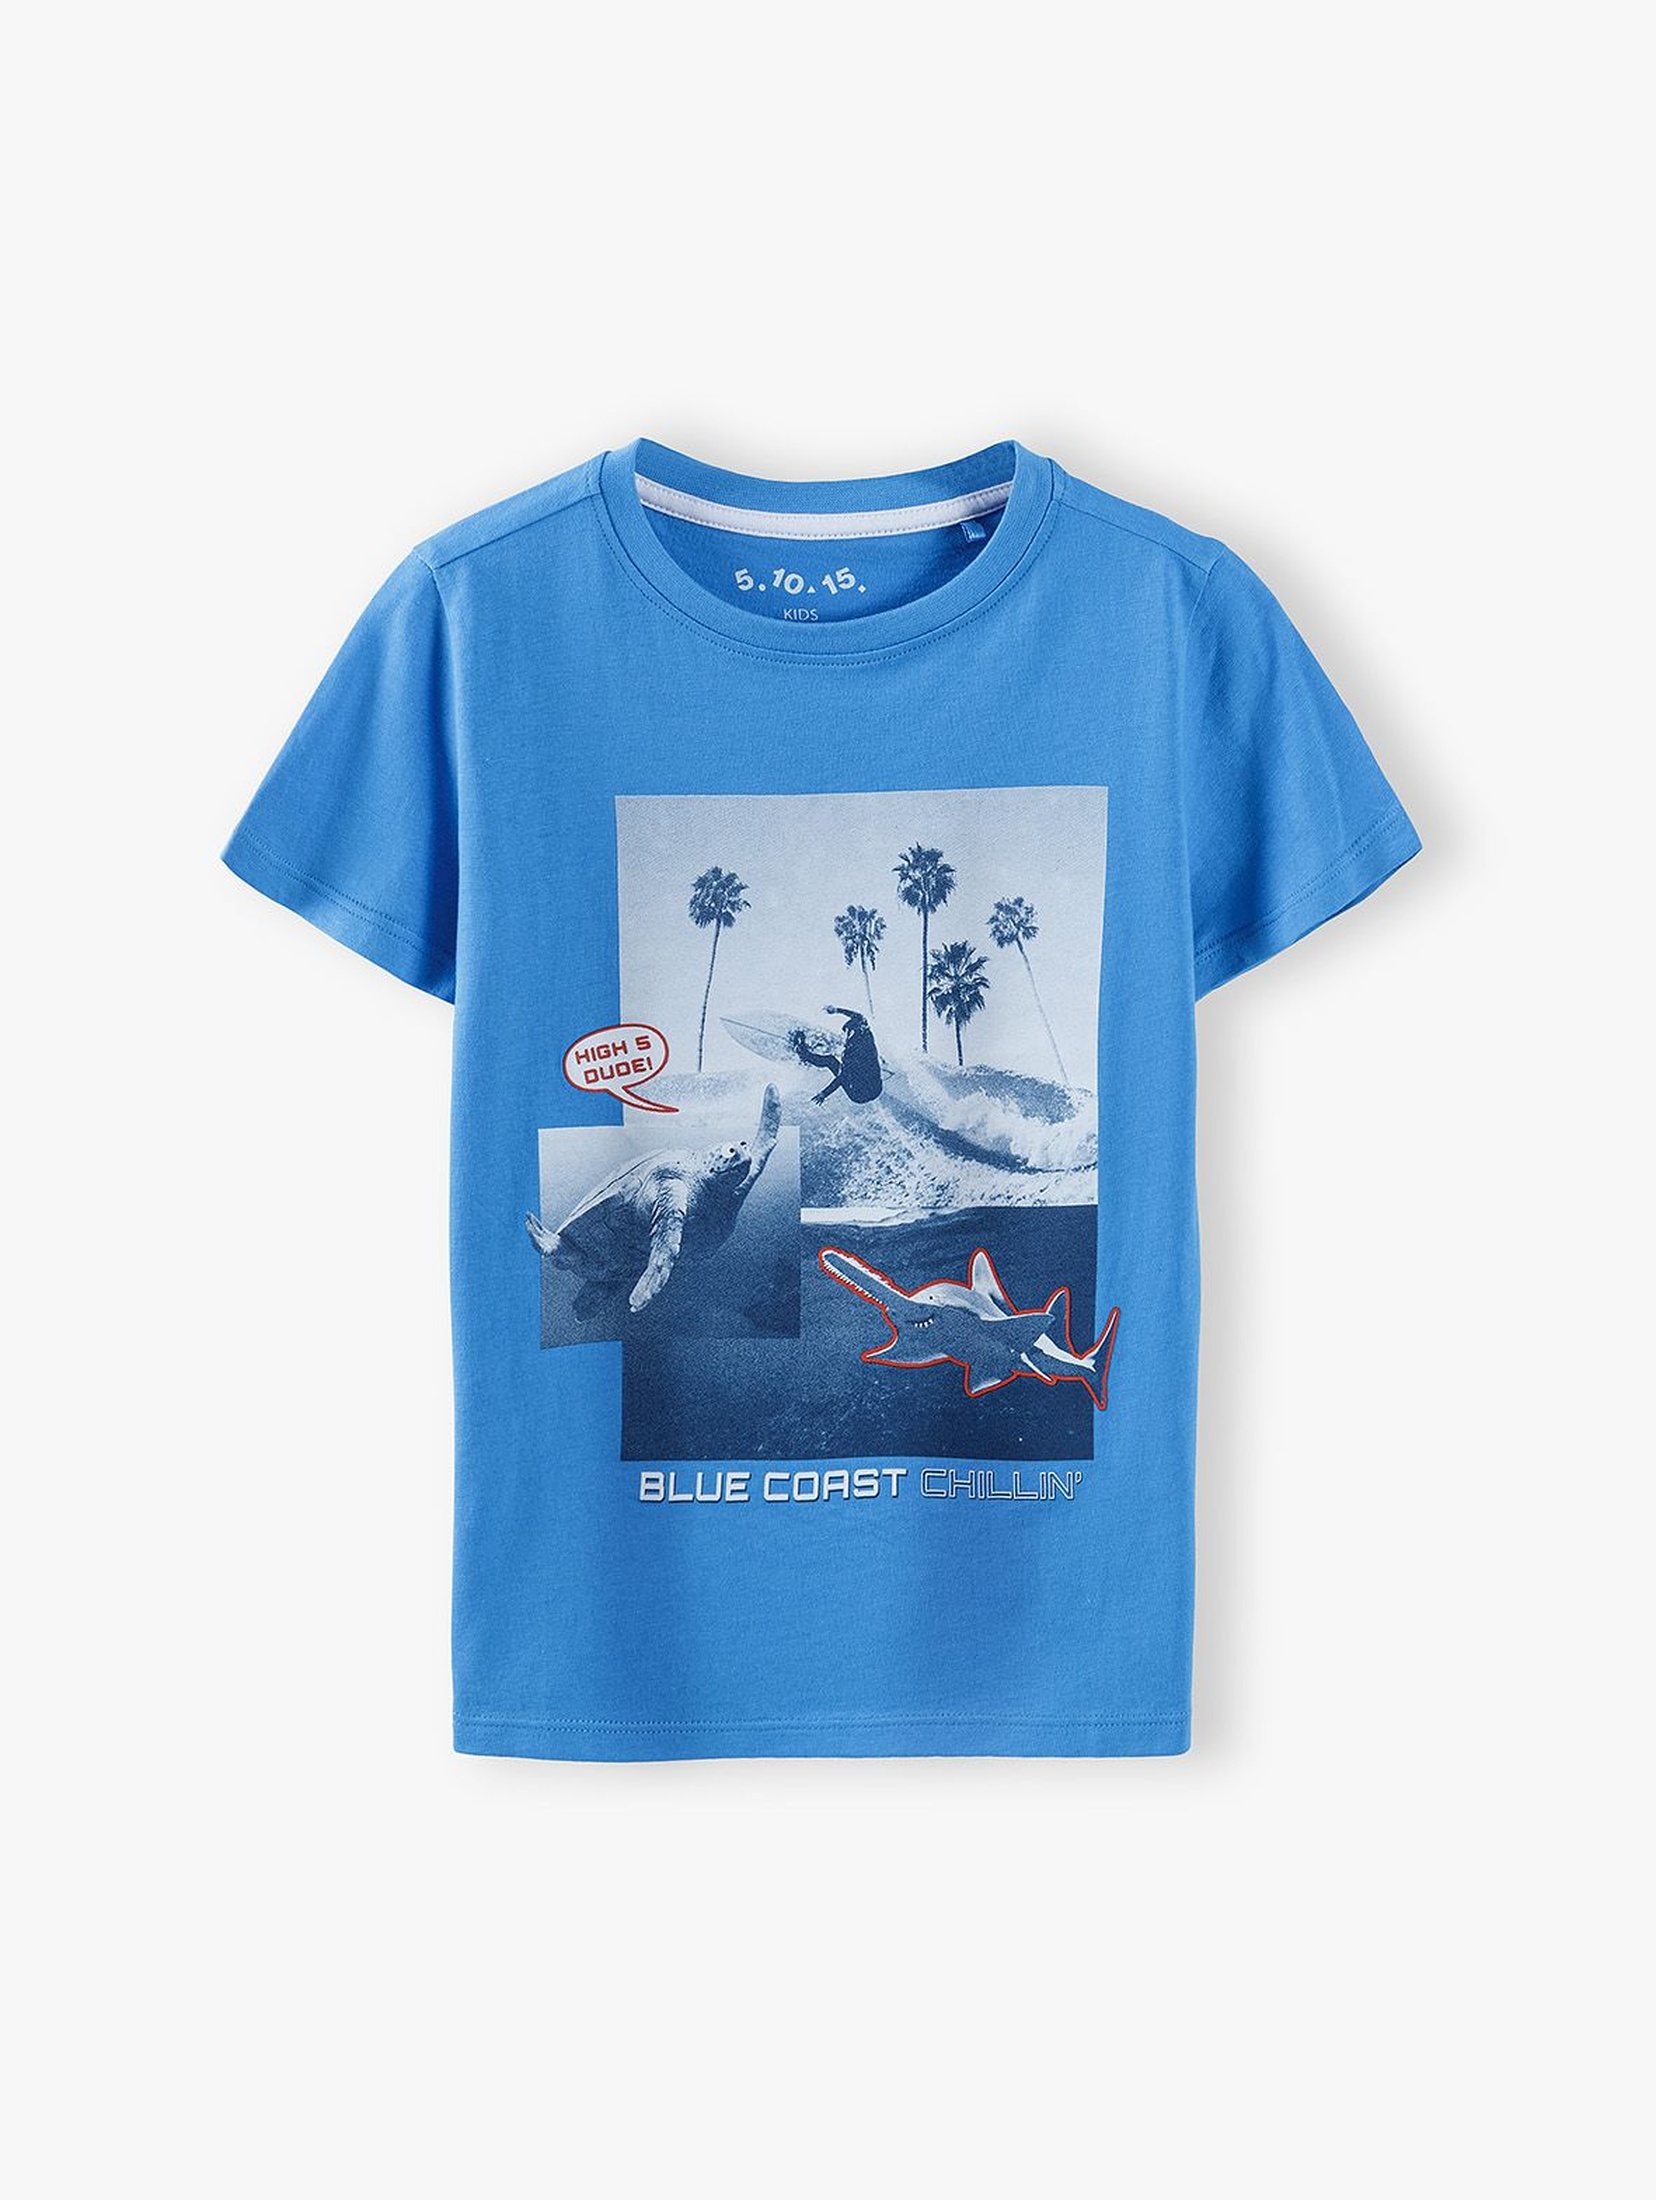 T-shirt chłopięcy niebieski z nadrukiem - 100% bawełna